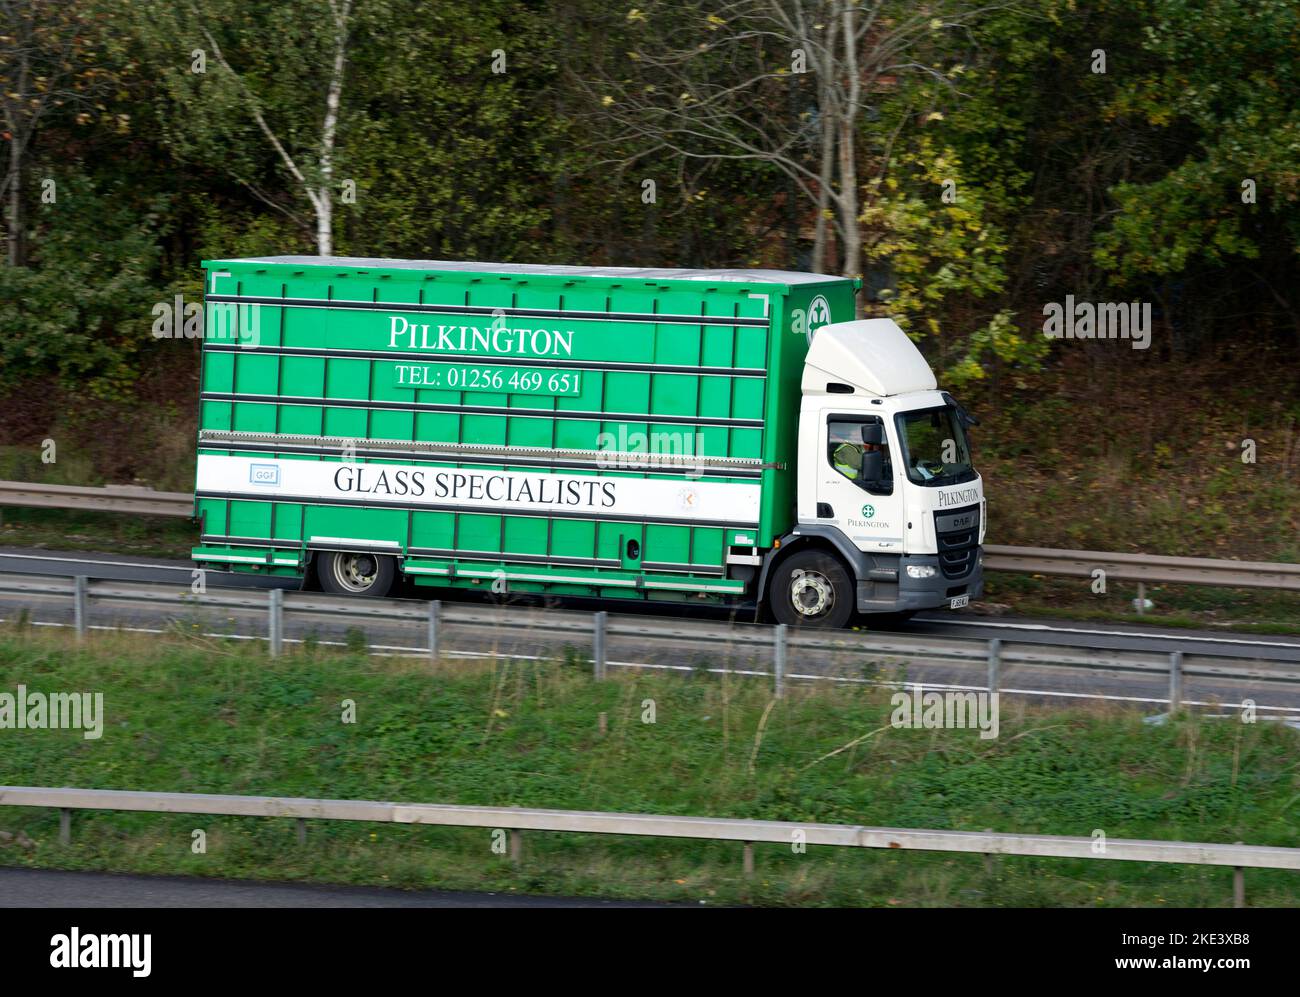 Pilkington Lorry rejoignant l'autoroute M40 à la jonction 15, Warwickshire, Royaume-Uni Banque D'Images